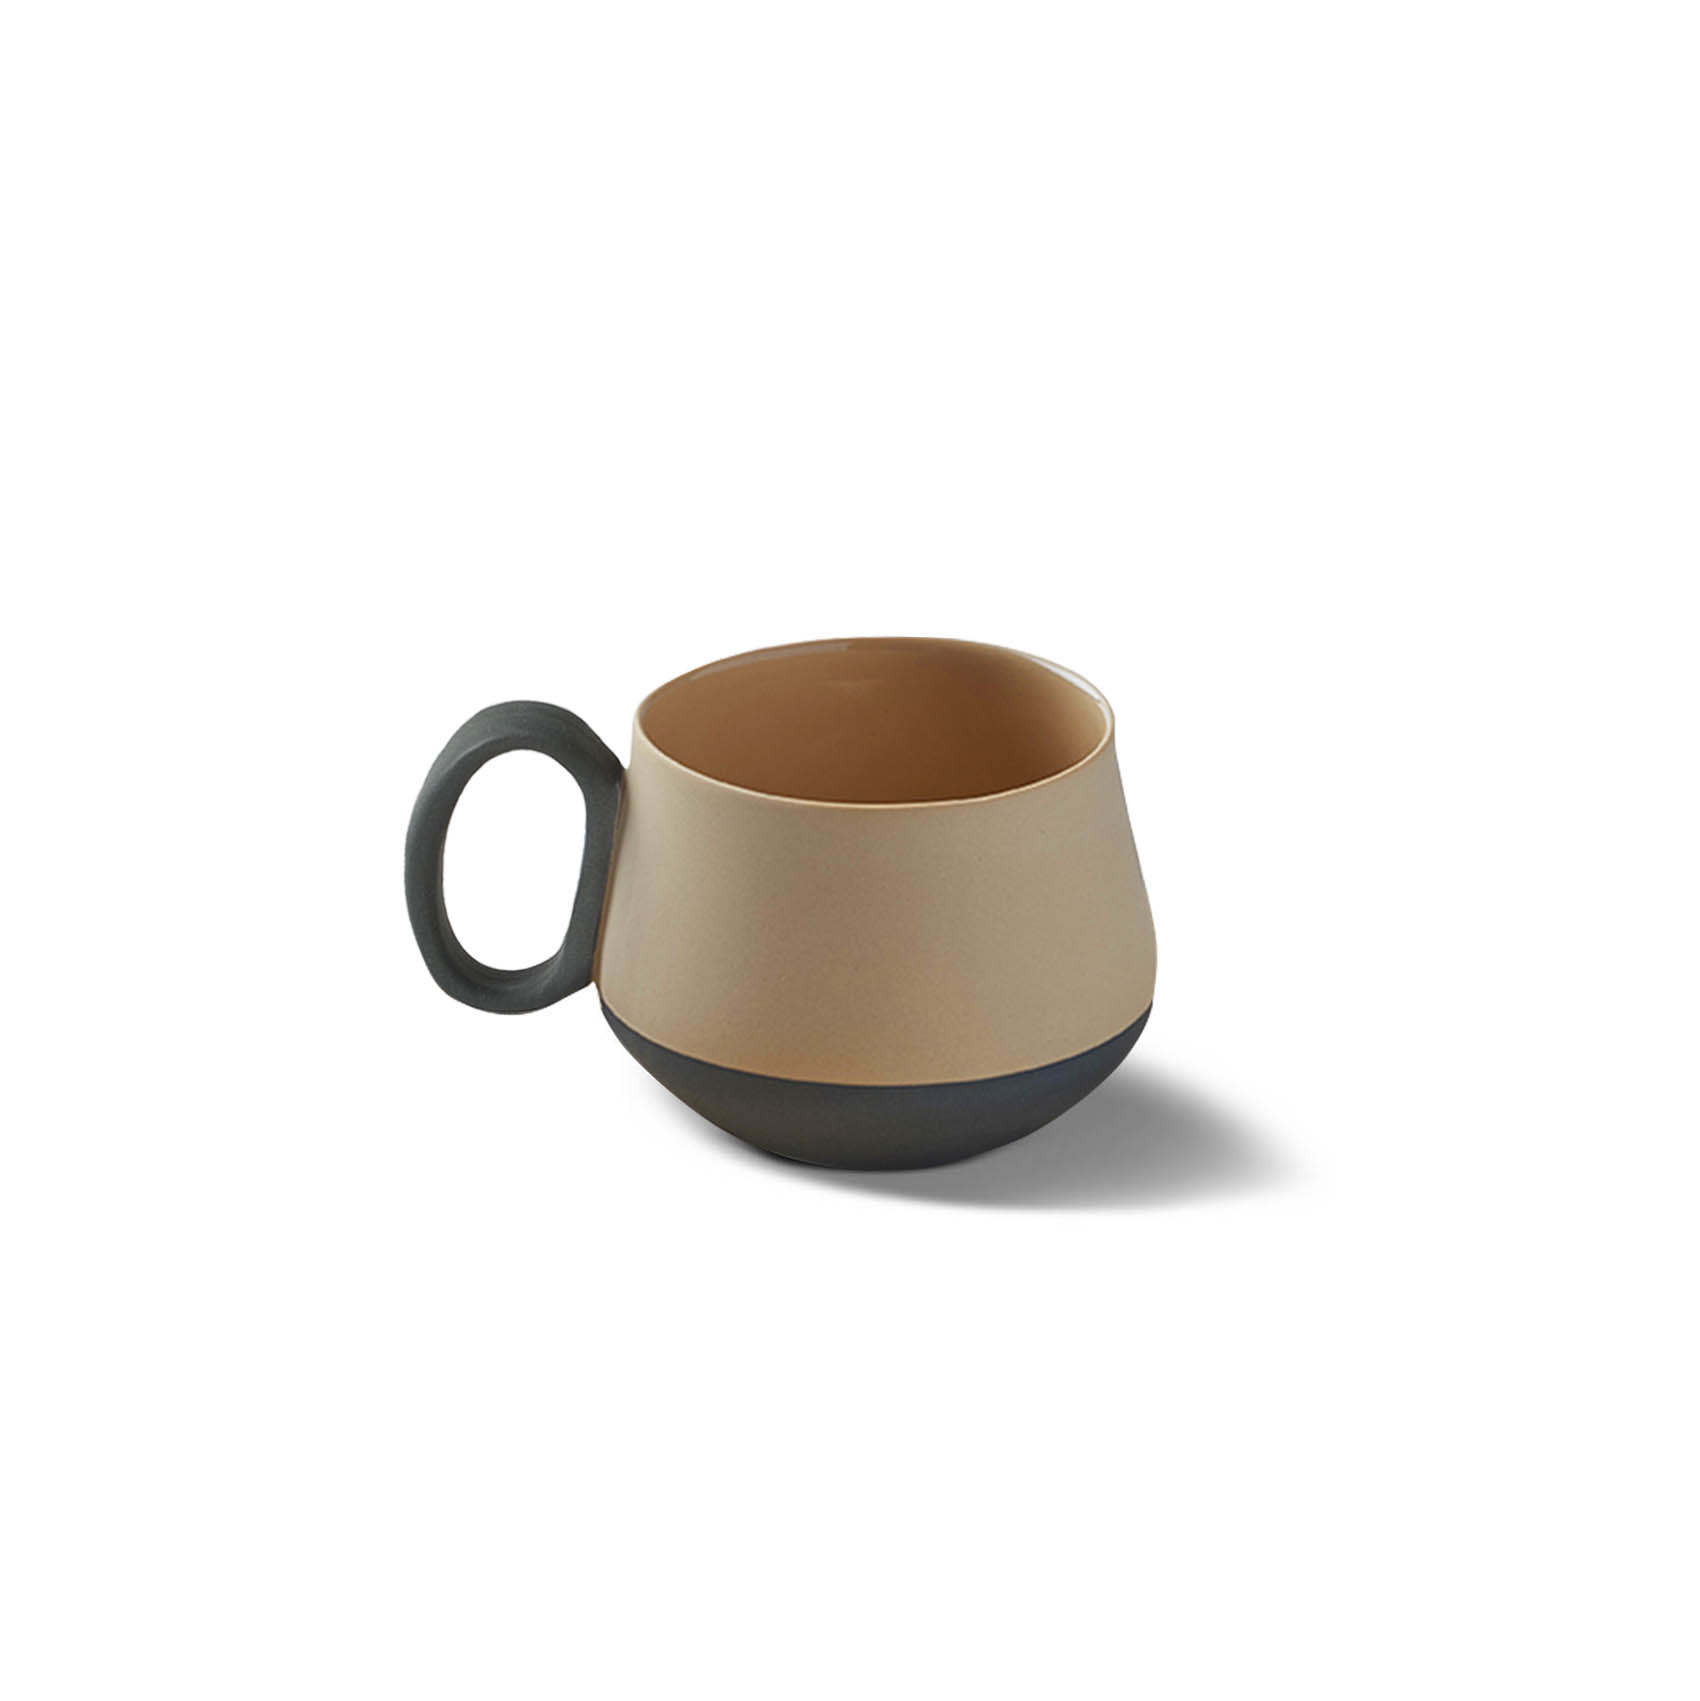 Tube Coffee Cup Porcelain - Black&Straw- Esma Dereboy 8x6x5cm-1